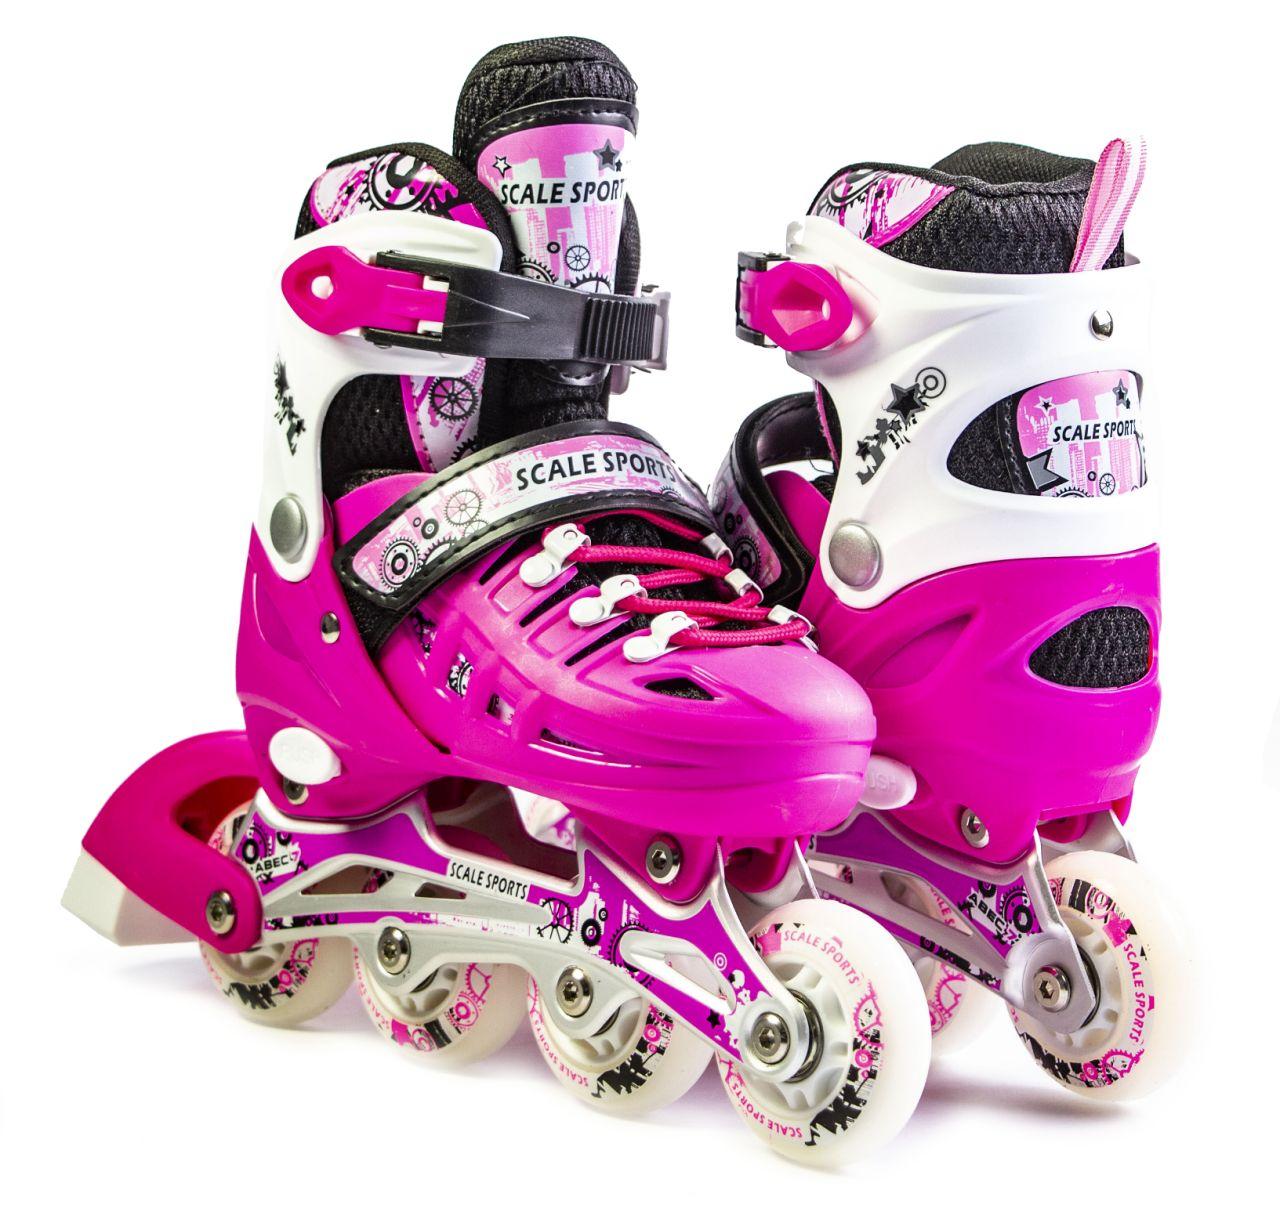 

Ролики Scale Sport Pink LF 905, размер 29-33, Малиновый